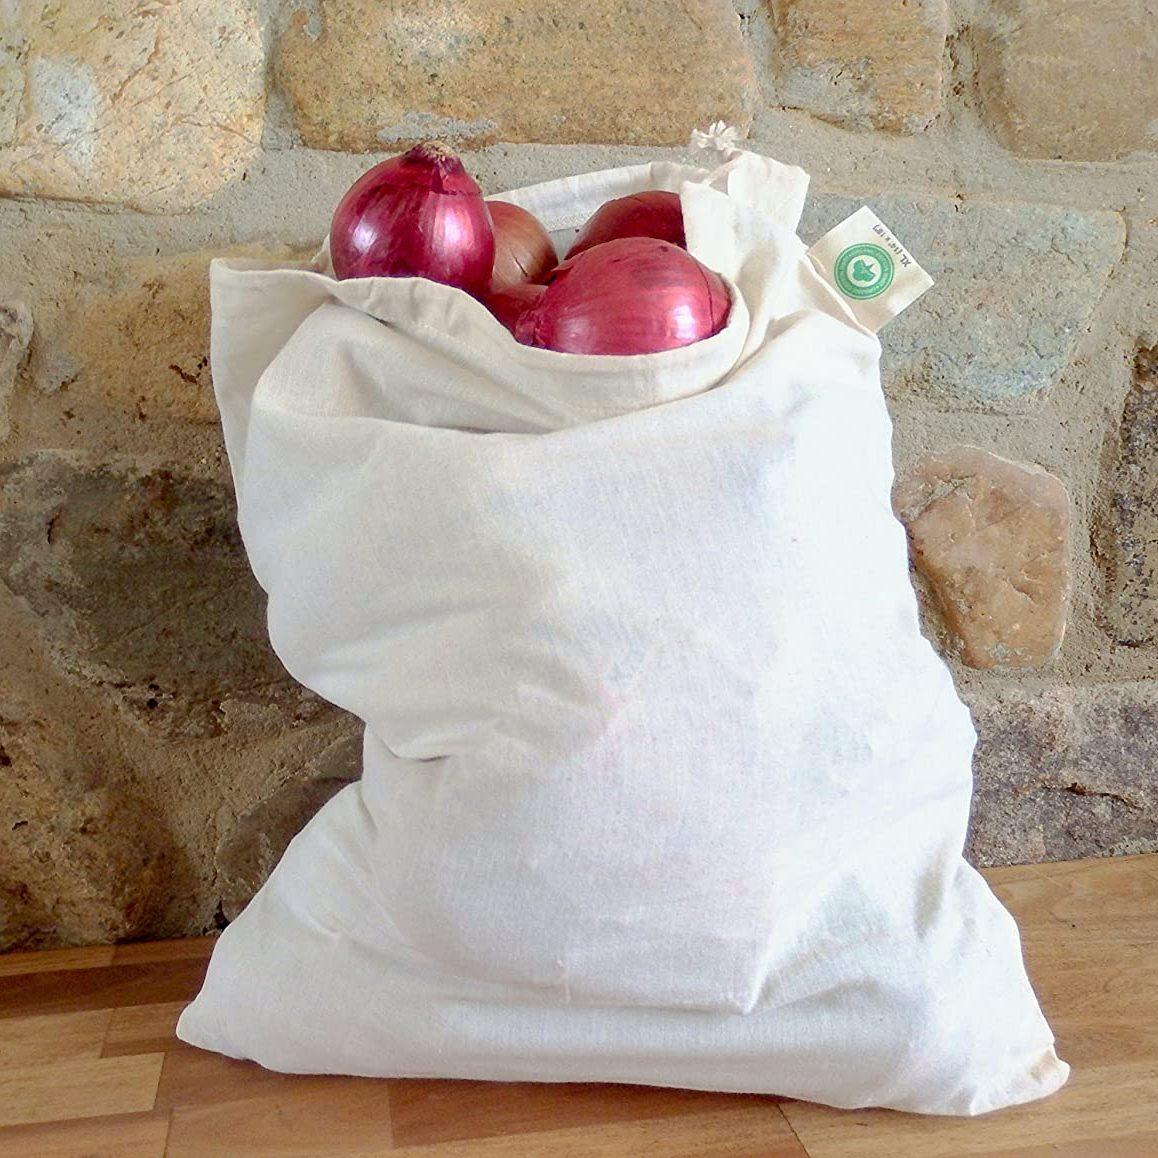 Original Debbie Meyer Green Bags Keep Fruits & Vegetables Fresh Longer 20  Bags.